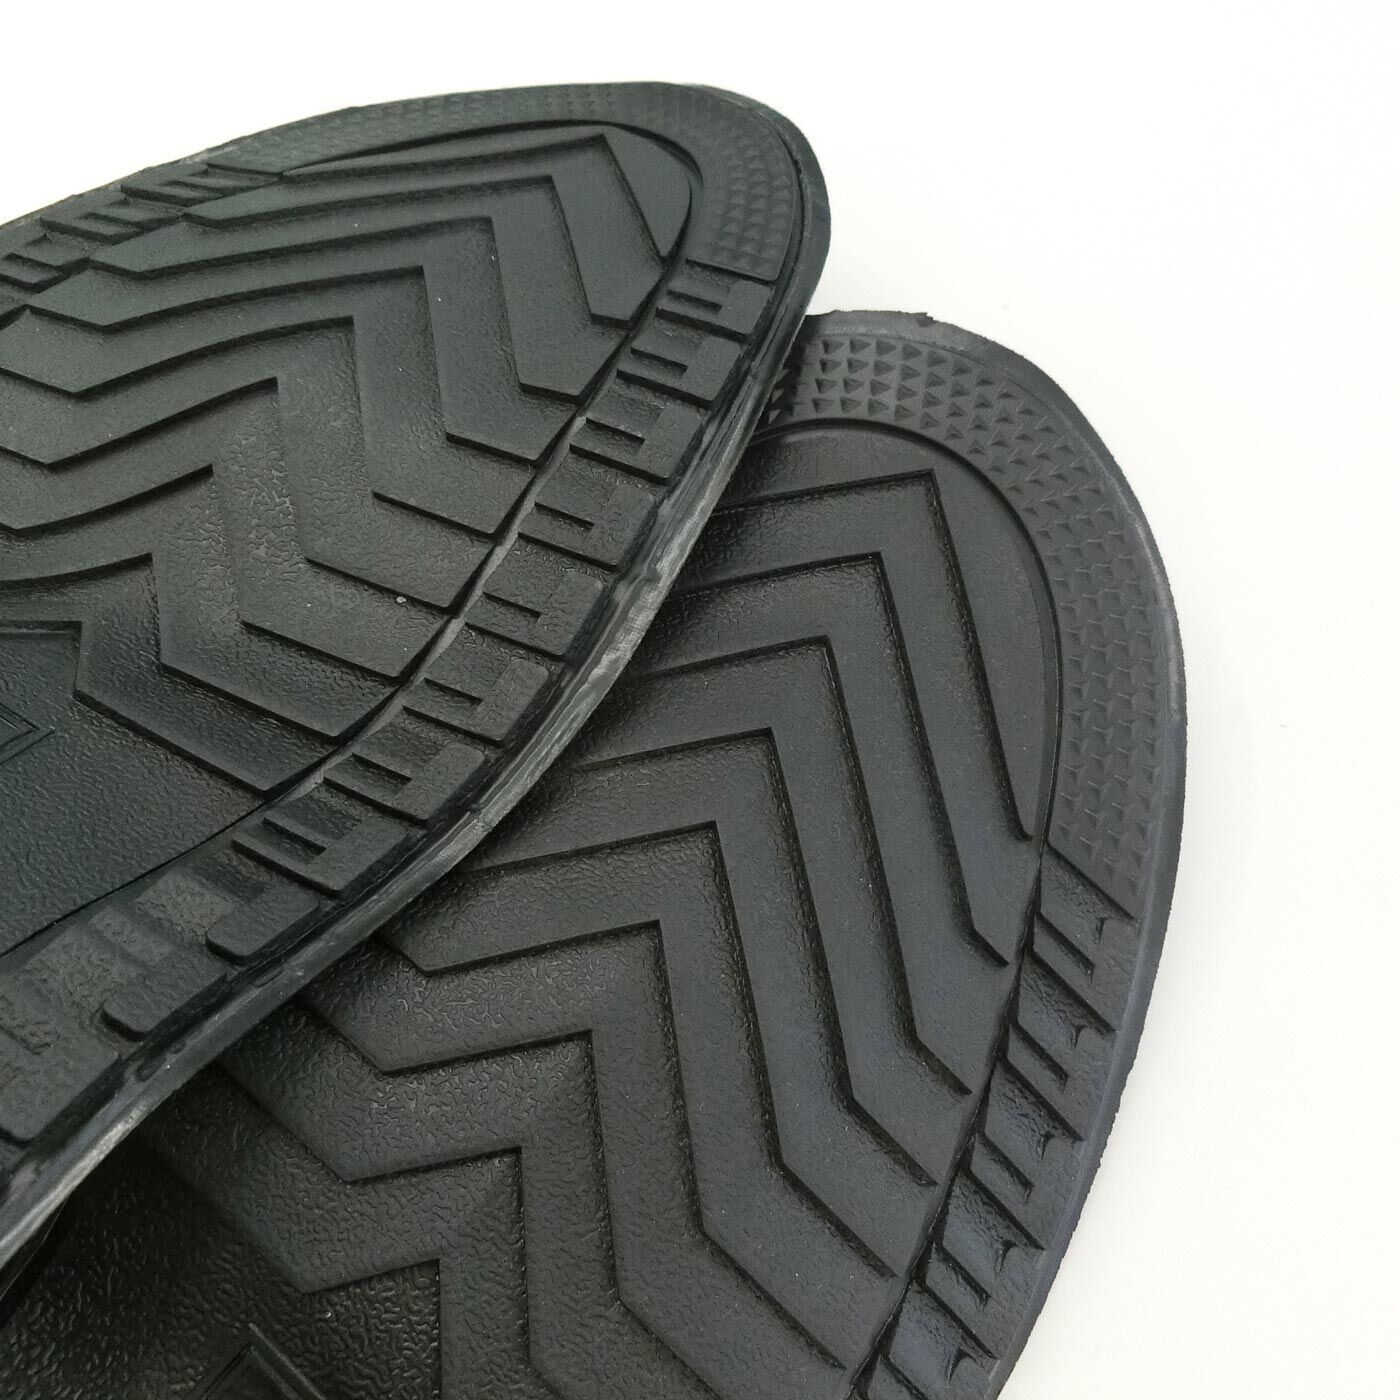 Real Stock|靴を雨や泥から守る　たたんで持ち歩けるシューズレインカバー〈透明〉|底は柔軟性のある素材。滑りにくい仕様になっています。